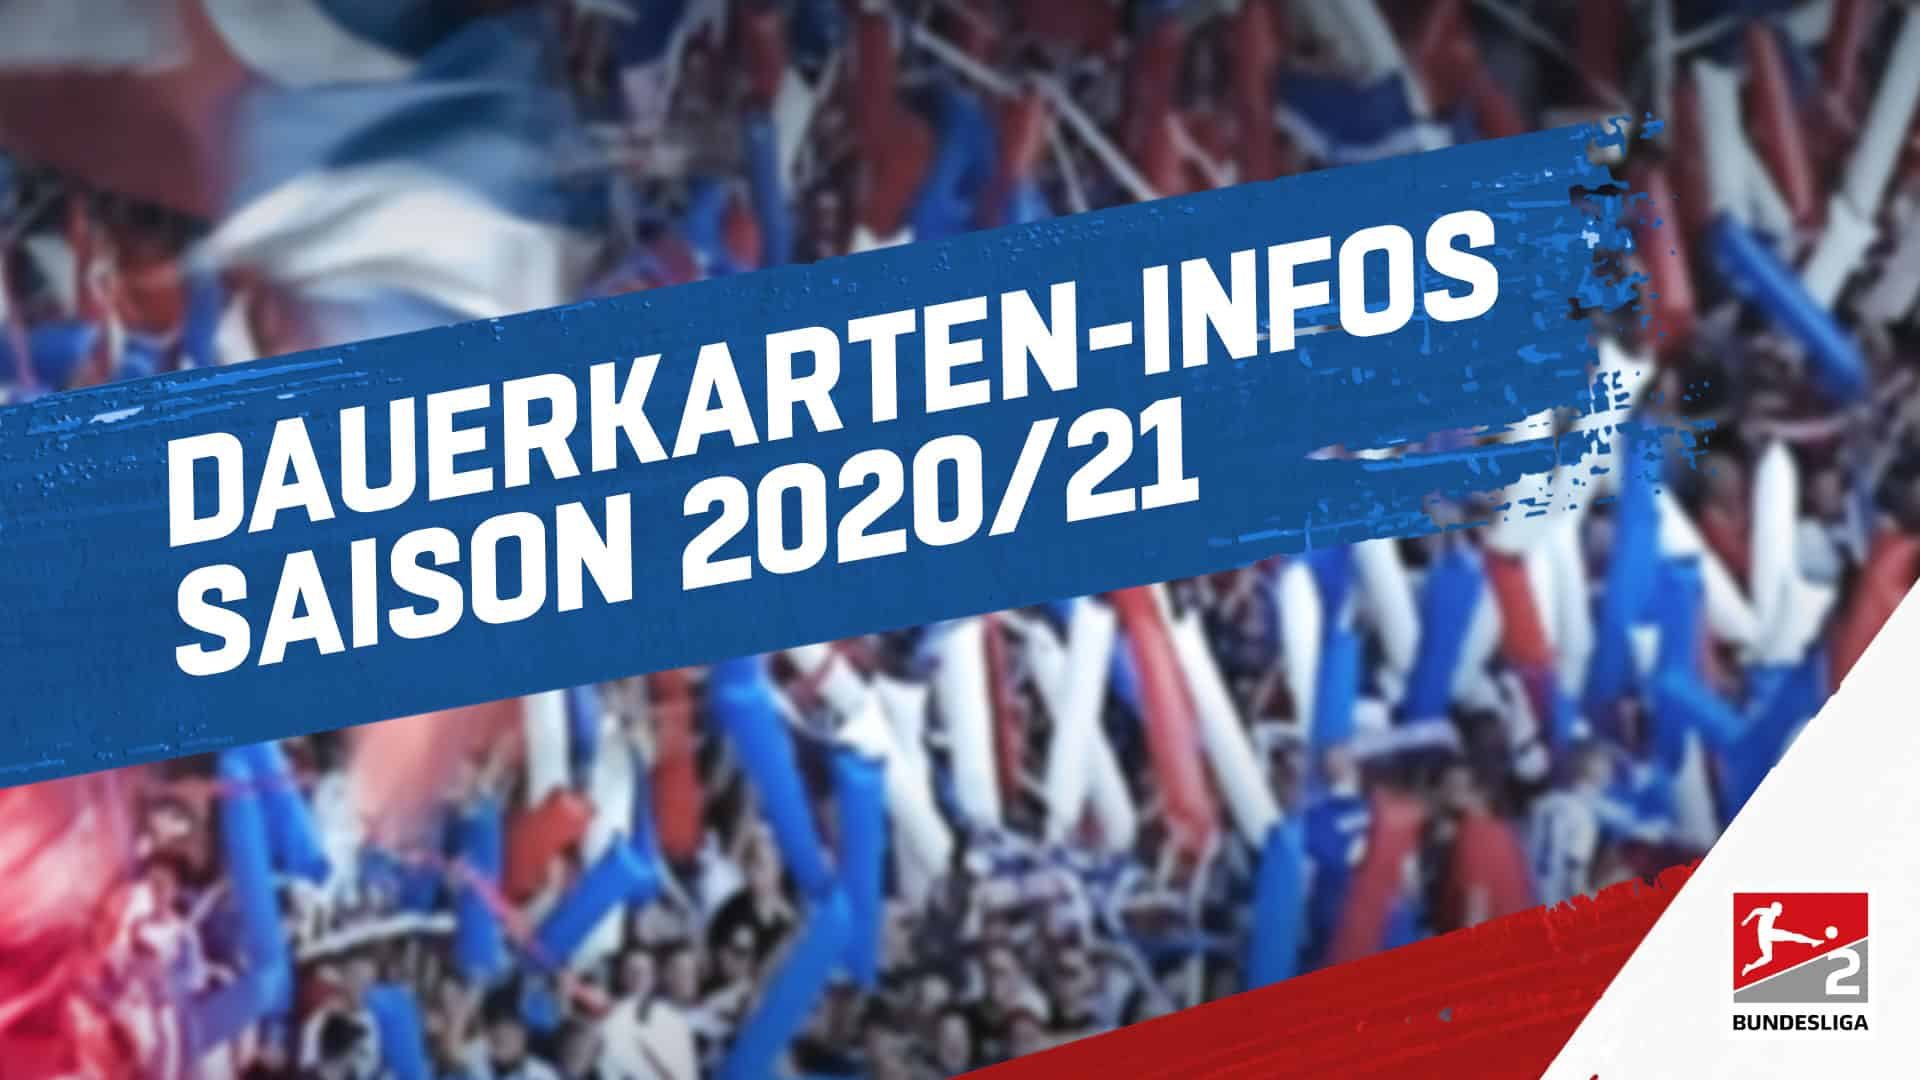 Dauerkarten Infos Saison 2020/21